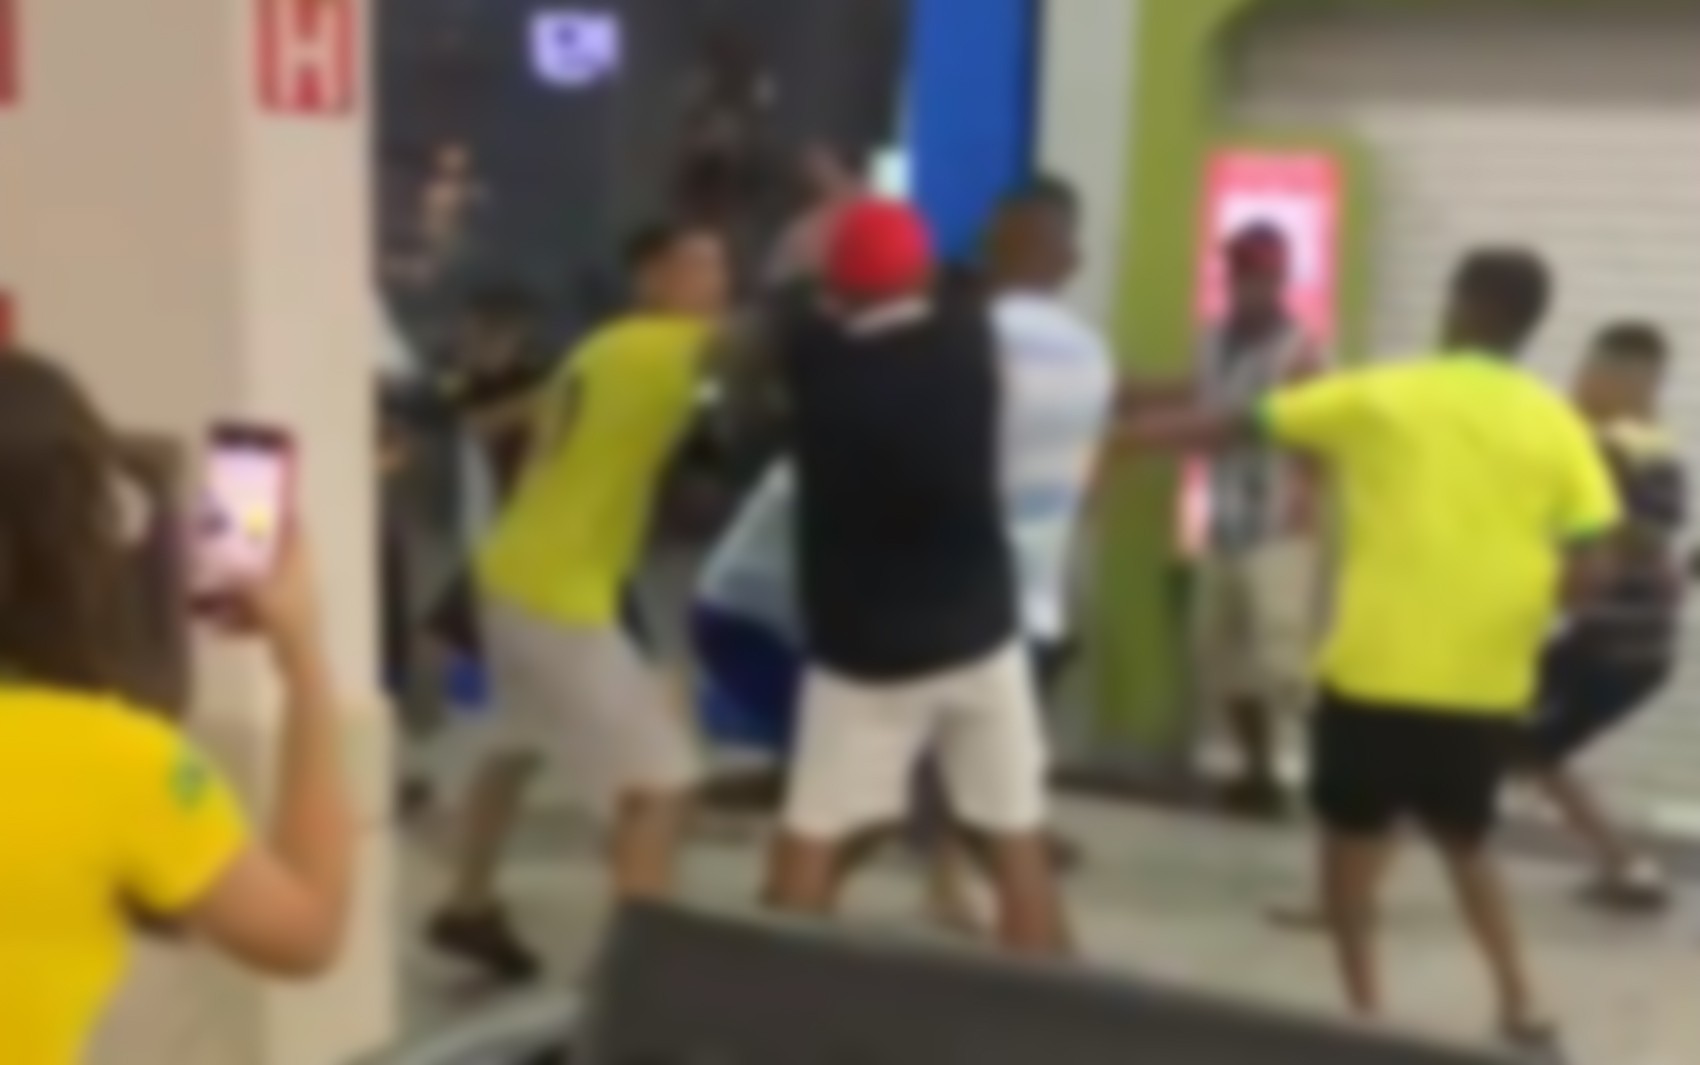 Vídeo mostra briga generalizada em shopping antes de tiroteio que matou adolescente em Barretos, SP